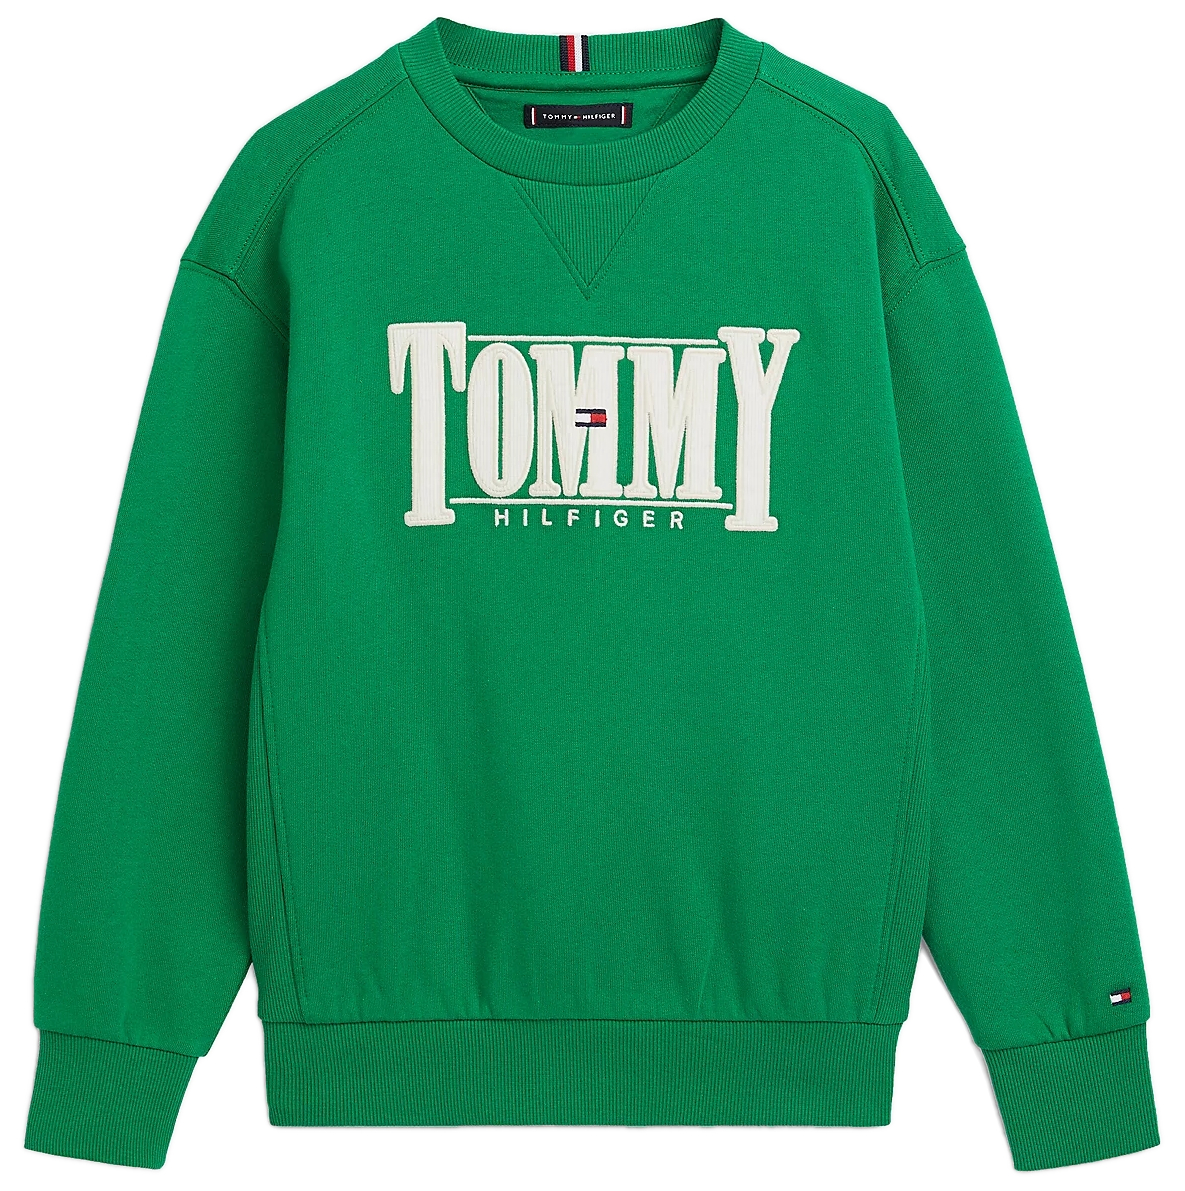 Camiseta Essential De Algodón Orgánico Niño Verde Tommy Hilfiger